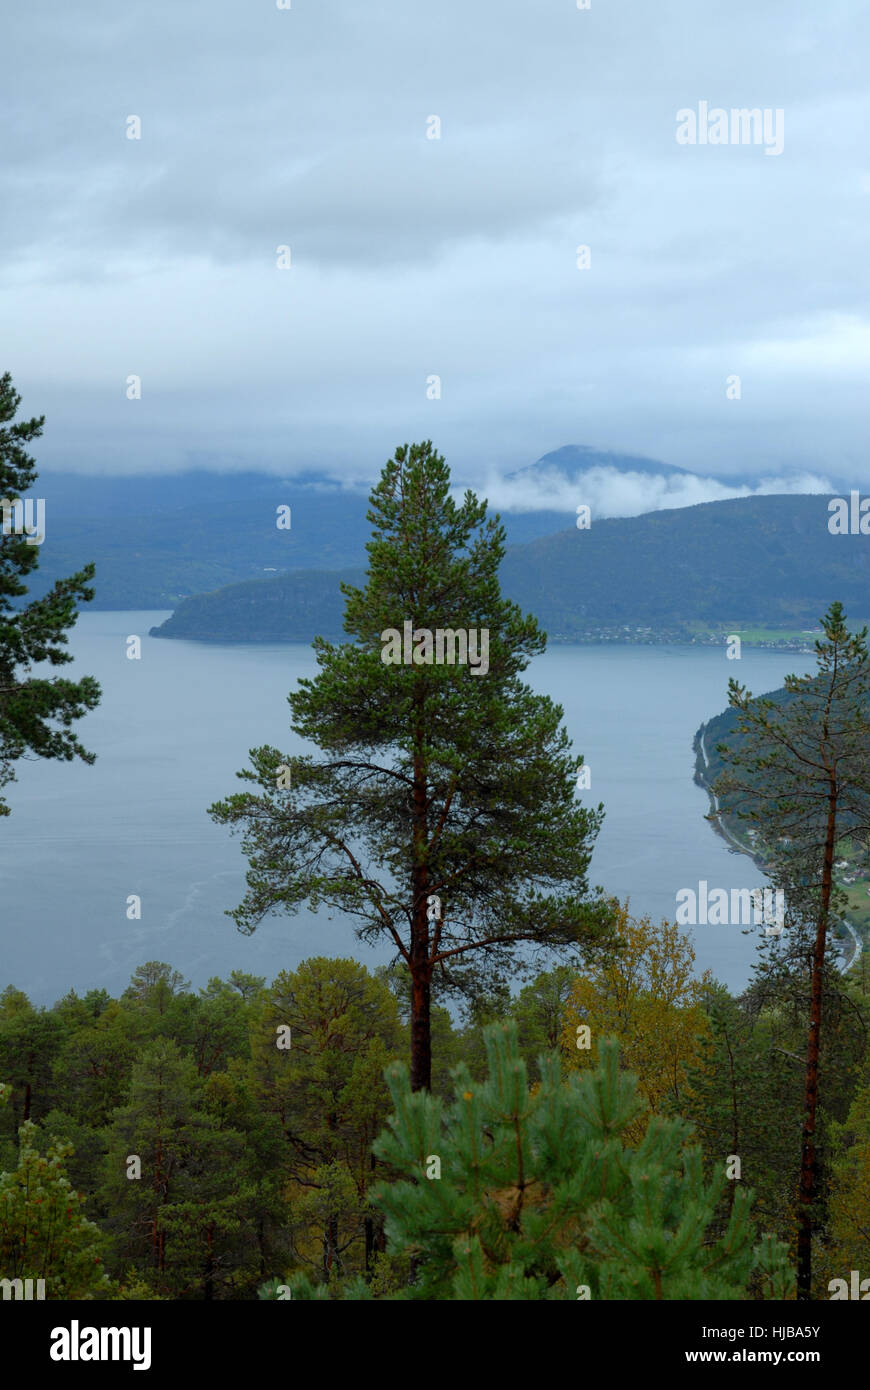 Albero, alberi, Norvegia, fiordo, Firth, montagna, banca, nuvole, shore, albero, alberi, Foto Stock